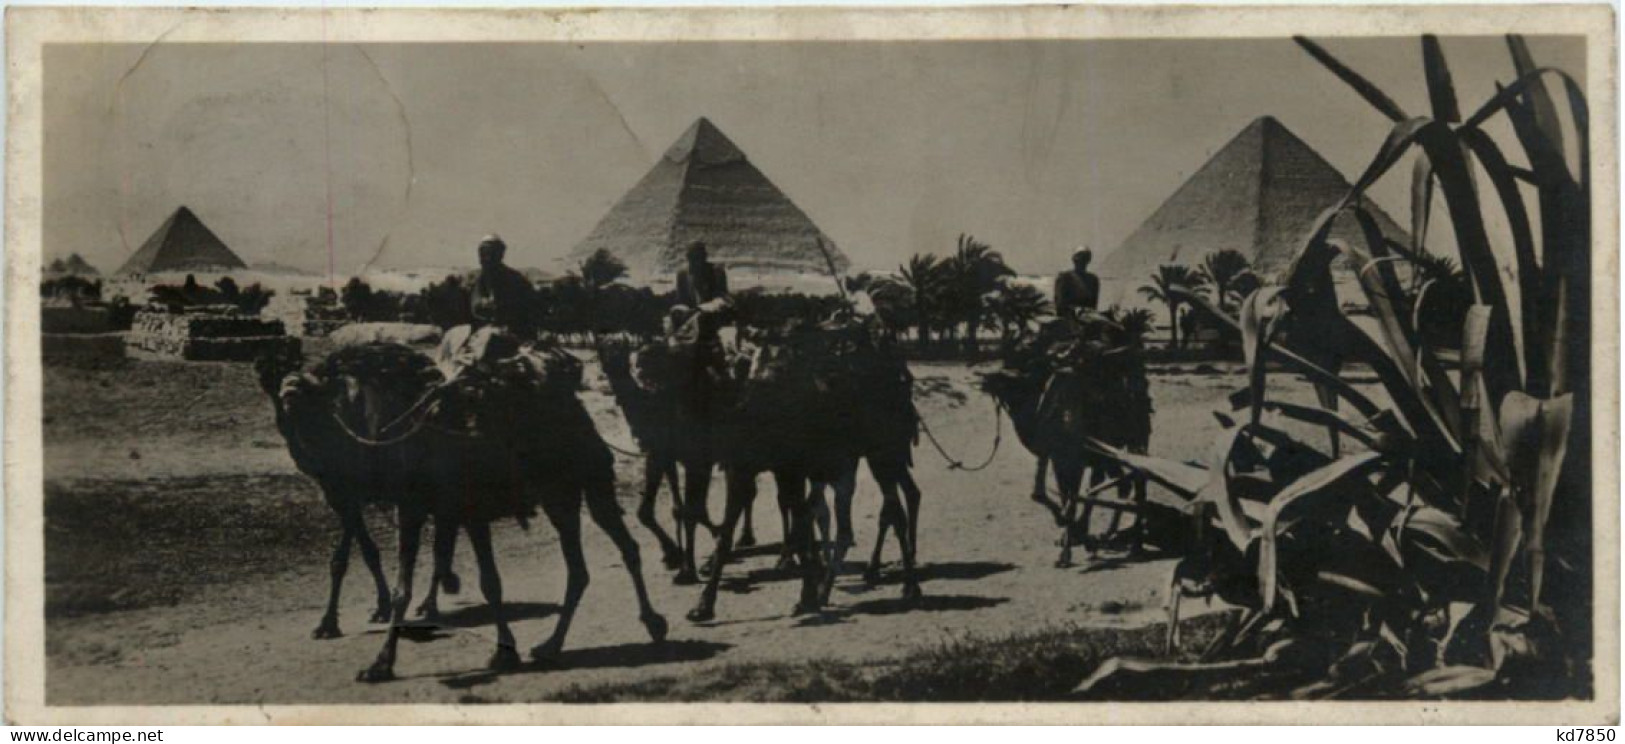 Ägypten - Pyramiden - Pyramides